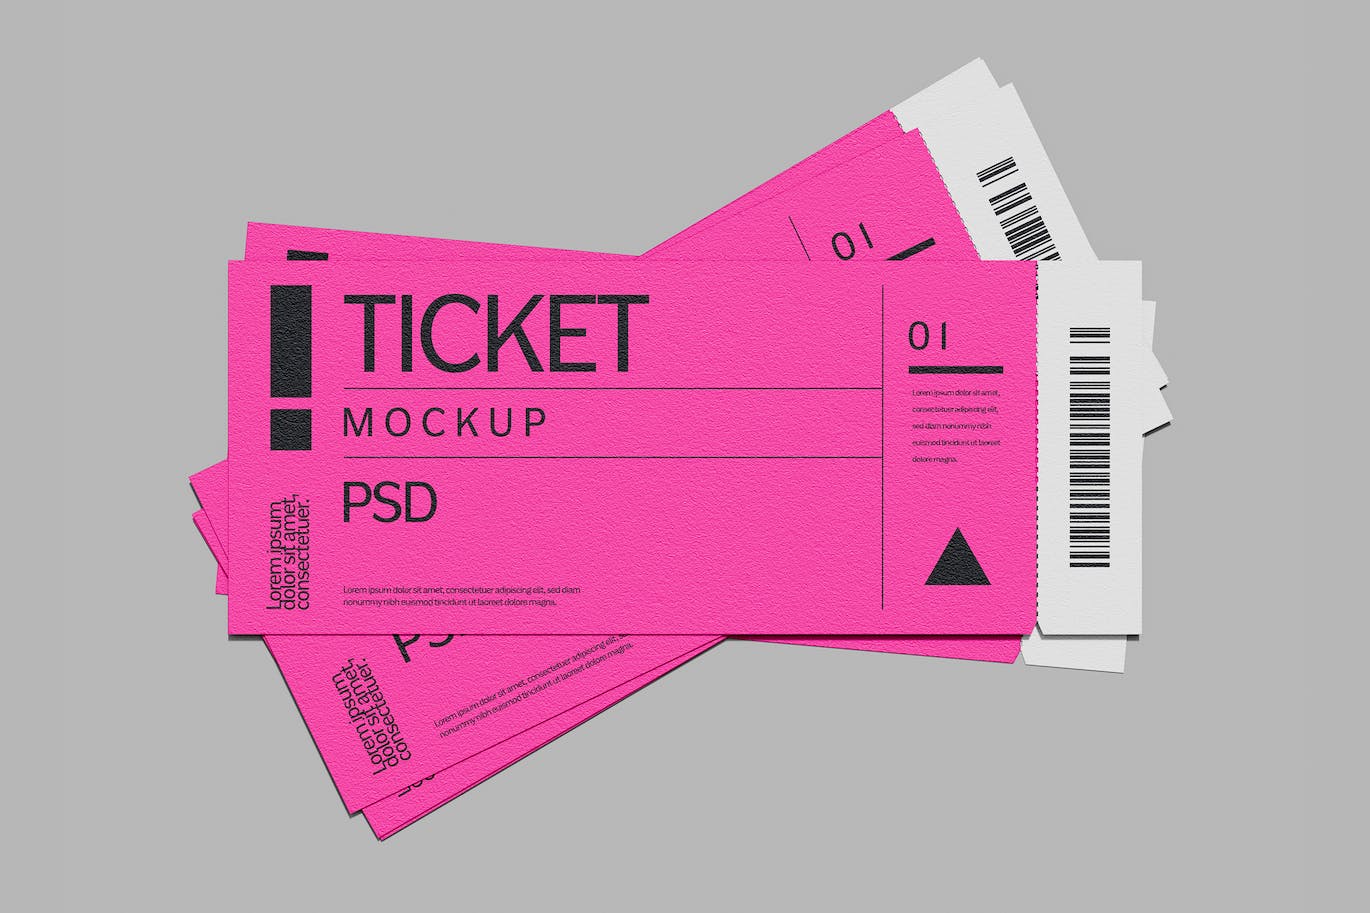 门票/票券/票证设计样机psd模板v2 Tickets Pass Mockup 样机素材 第1张